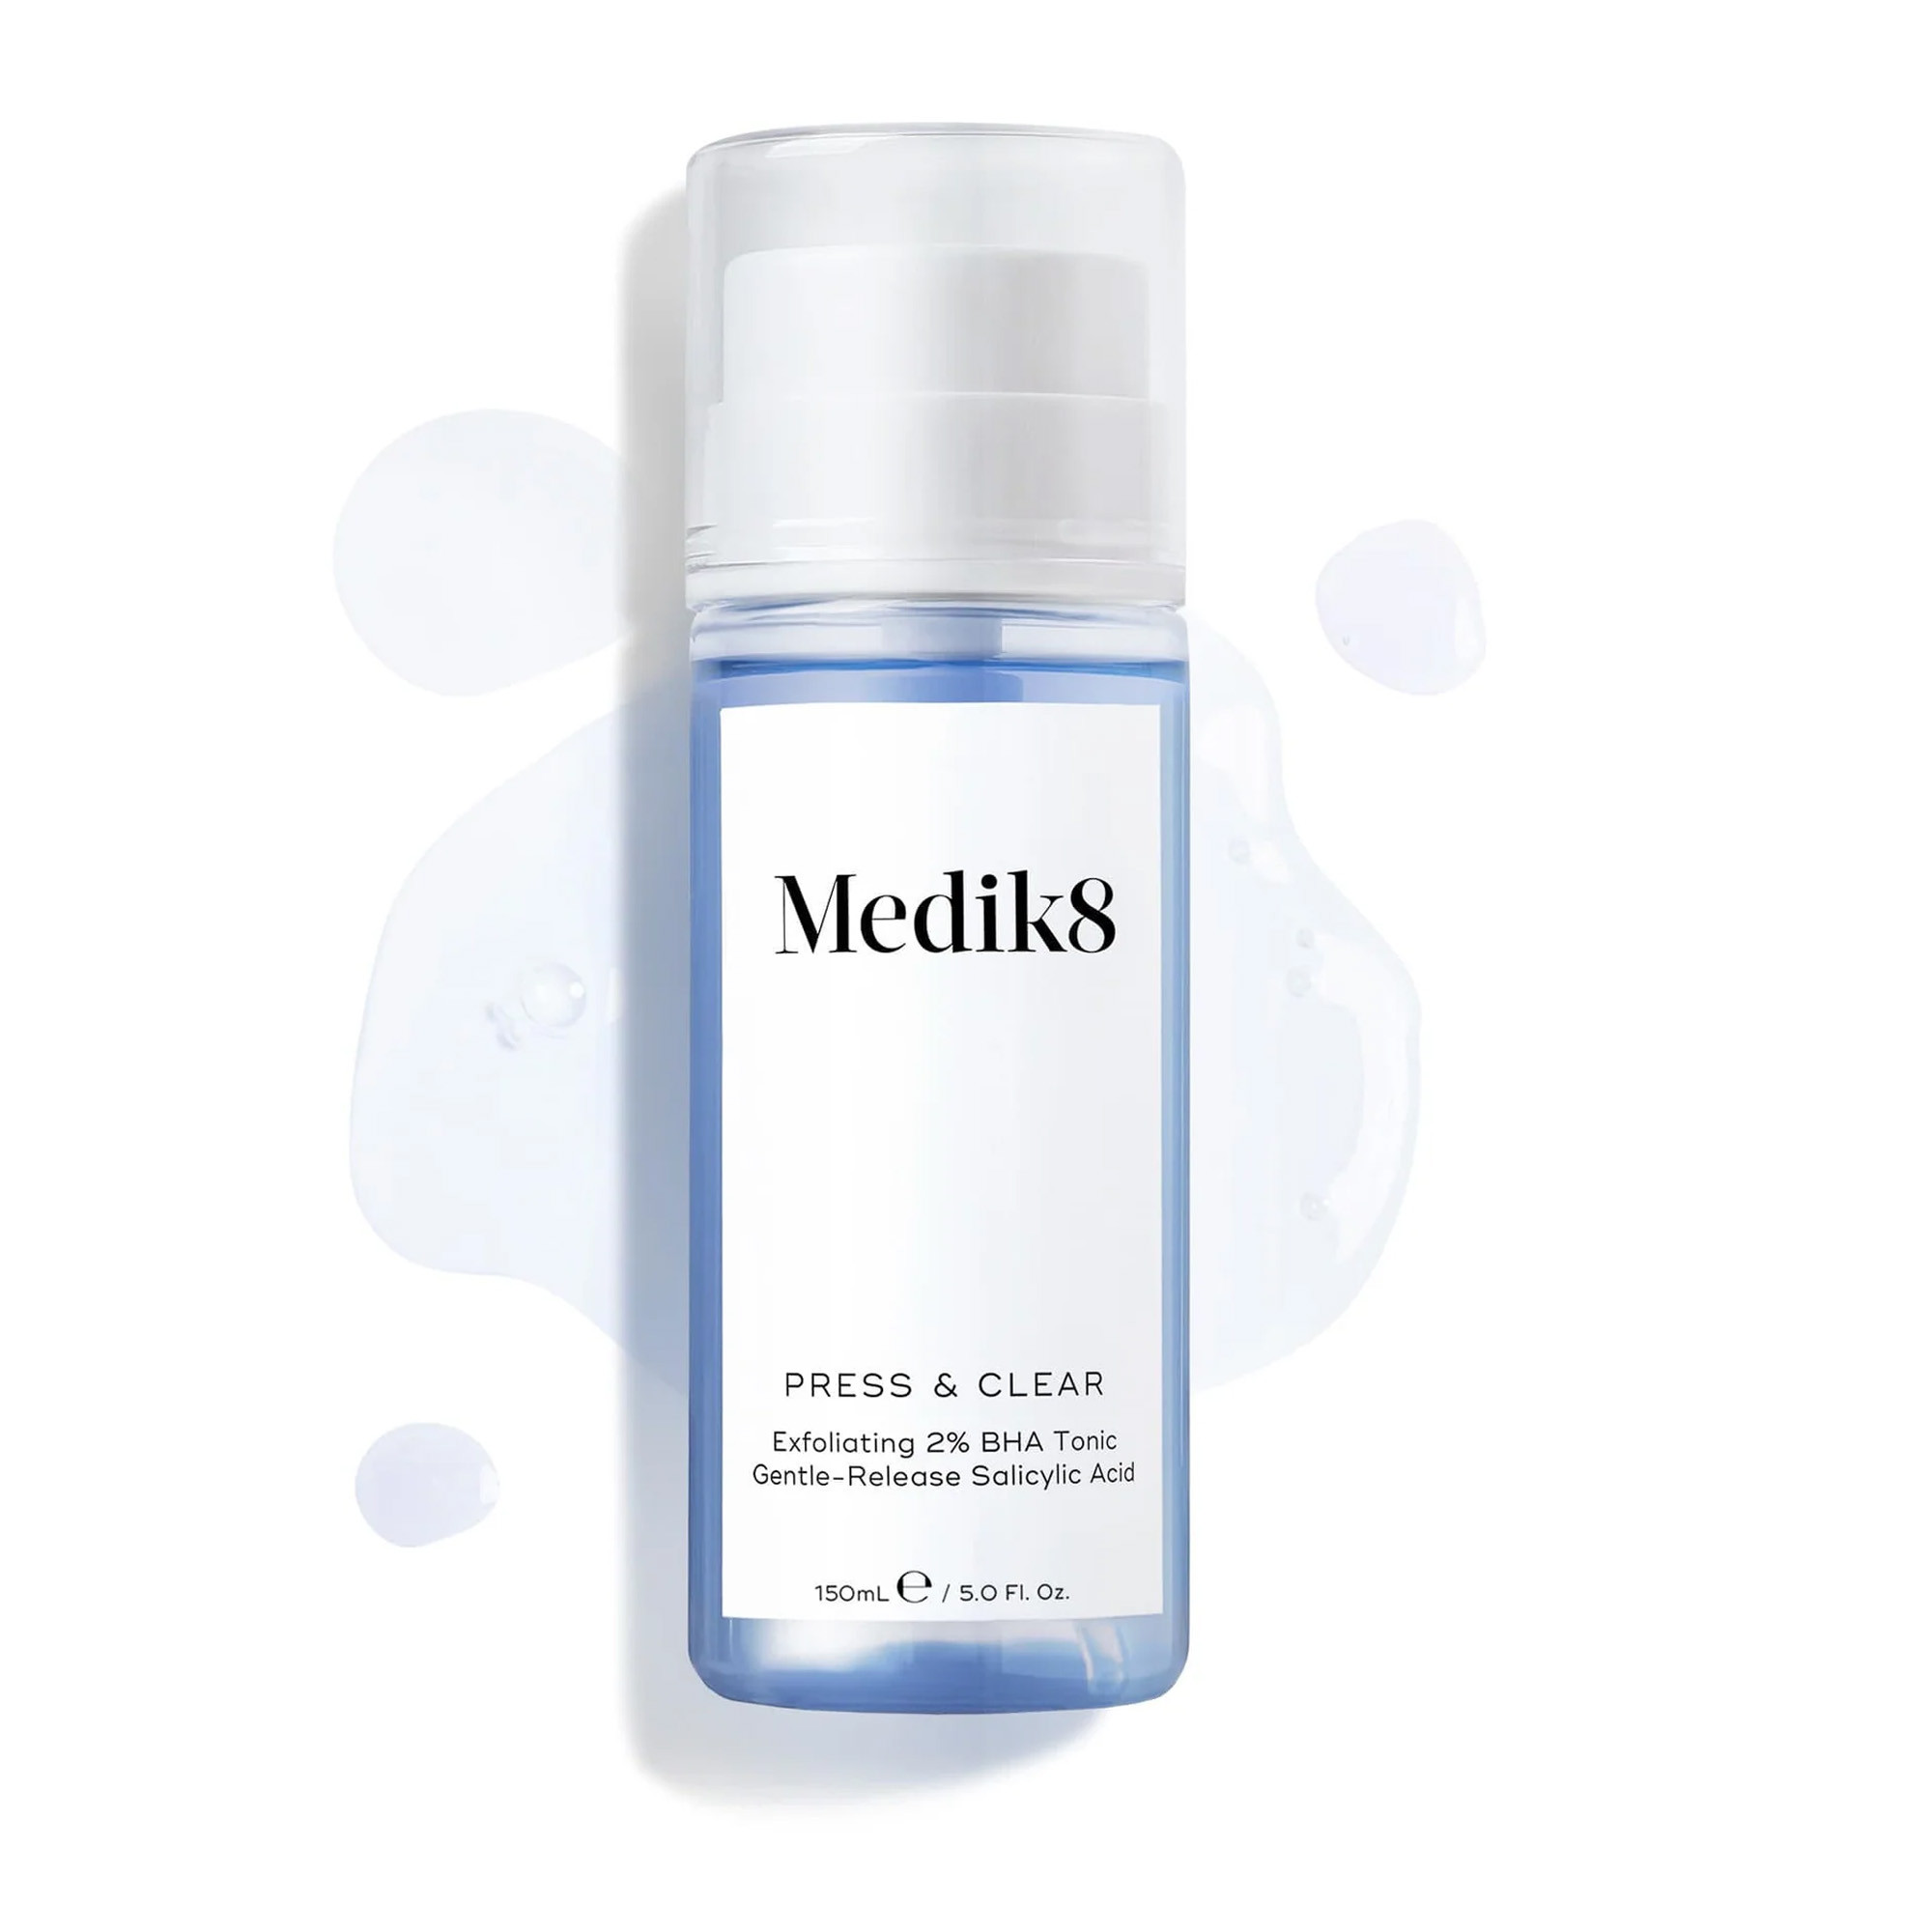 ВНА-тоник с 2% инкапсулированной салициловой кислотой для проблемной кожи Medik8 Press And Clear